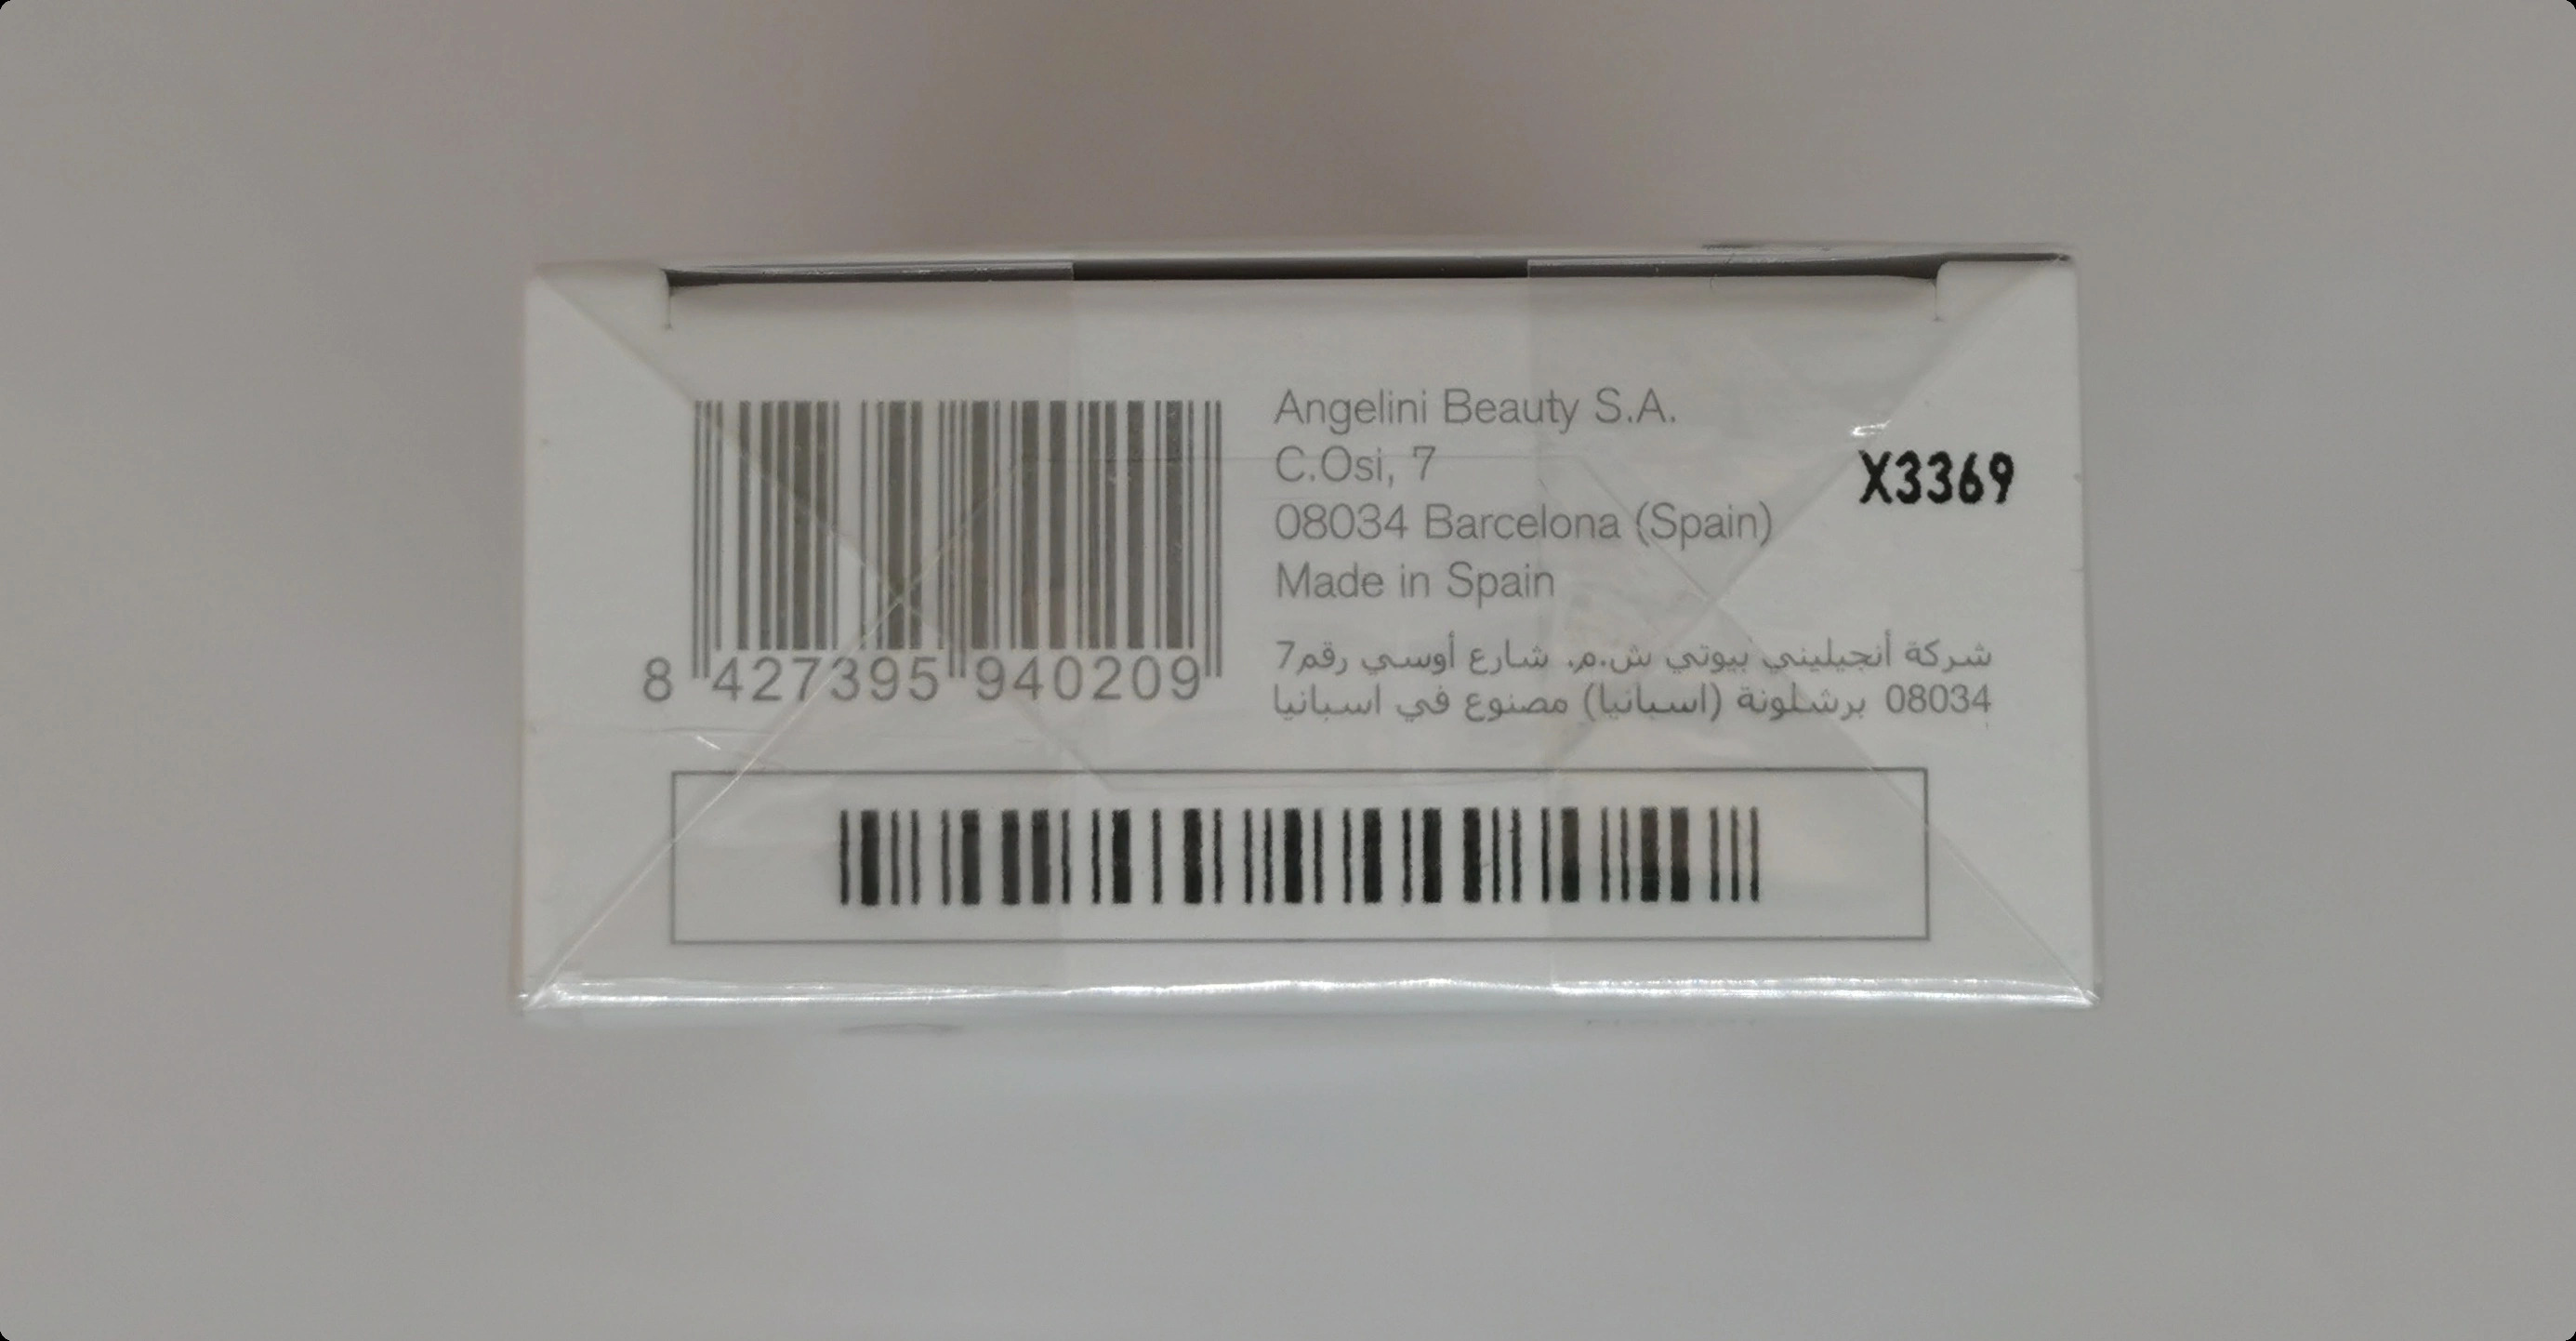 Туалетная вода 100&nbsp;мл - фото штрих-кода и батч-кода на коробке